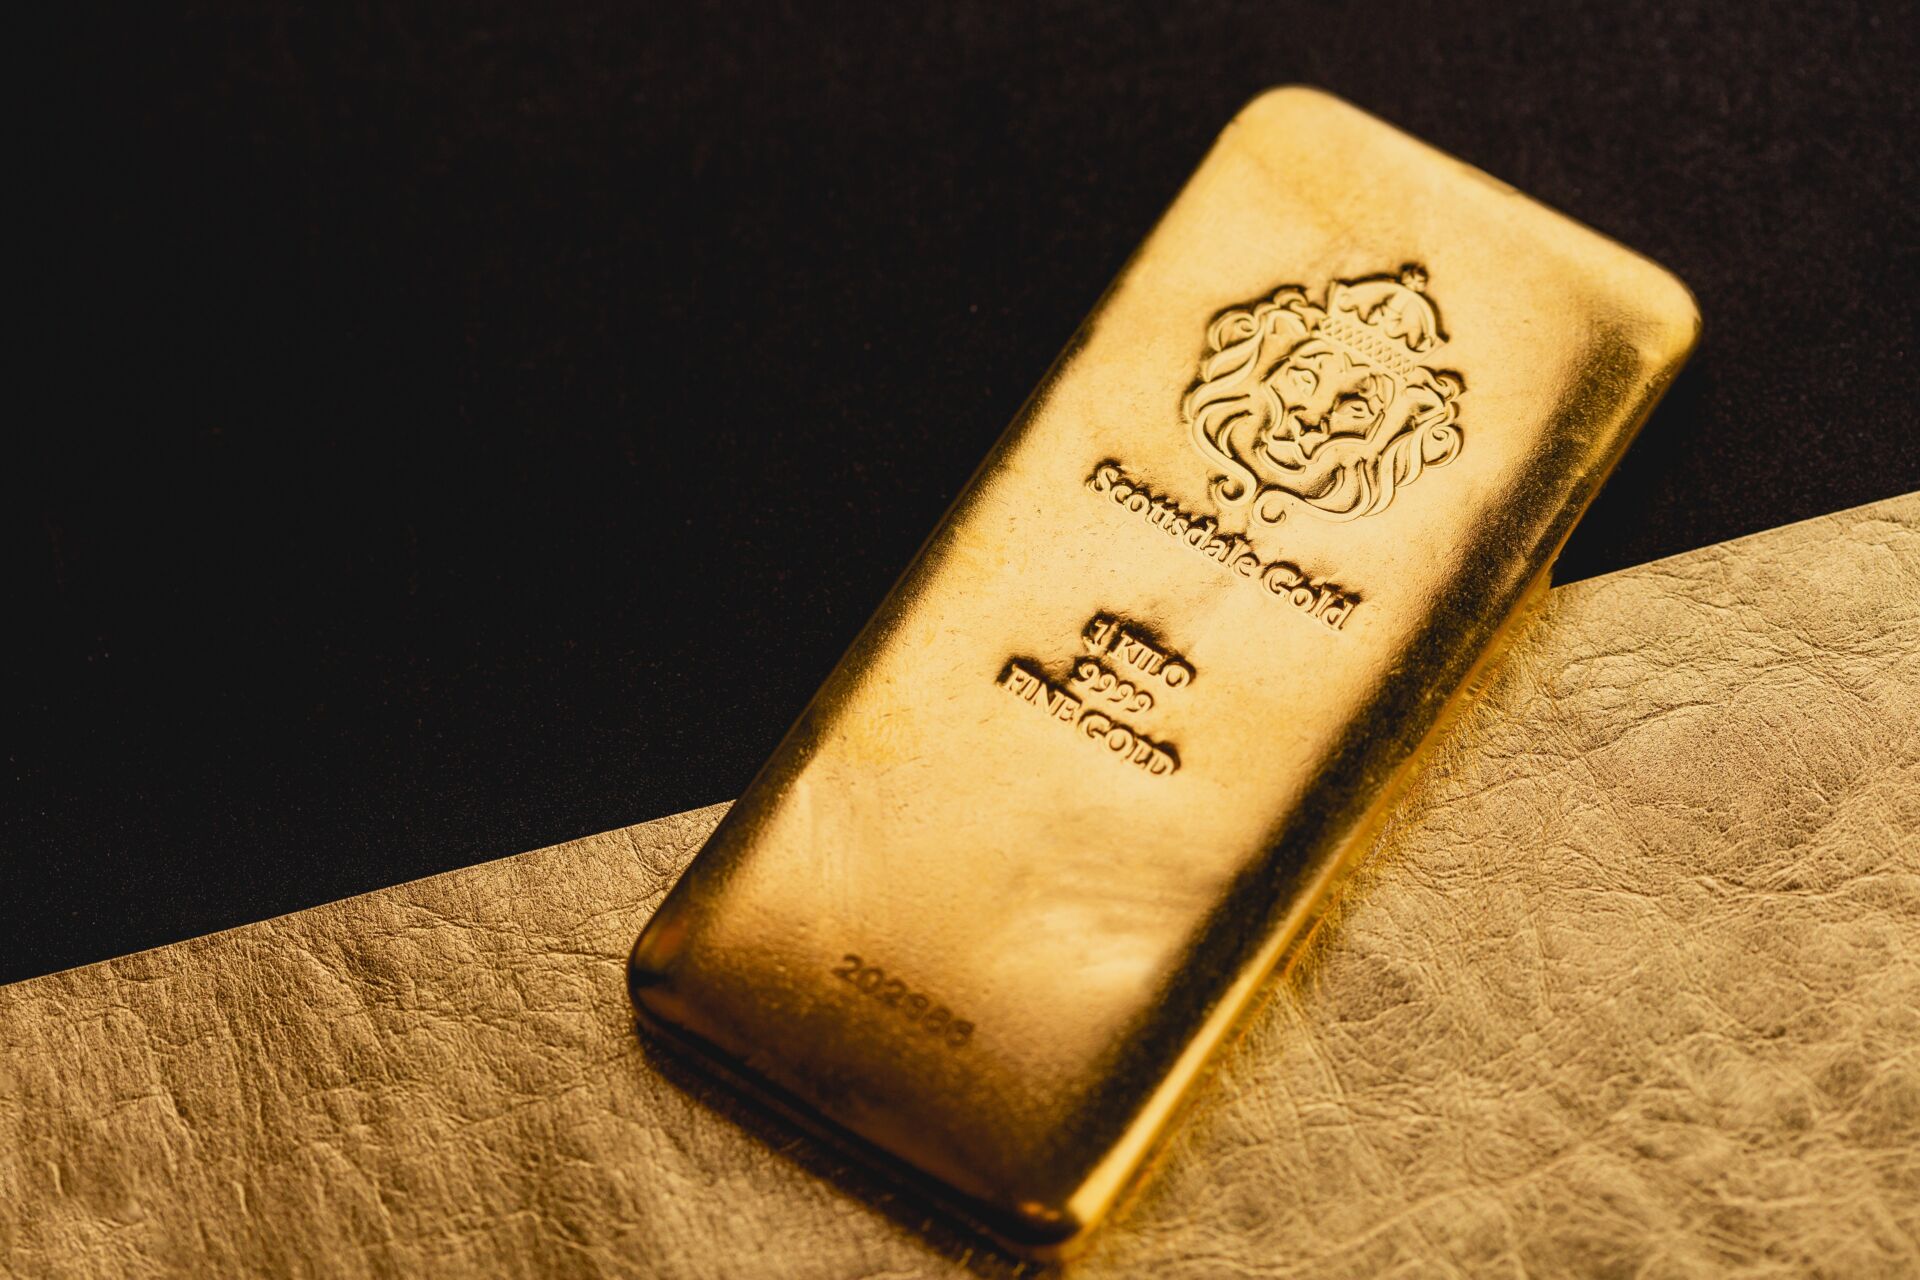 Kan de overheid mijn goud en zilver afpakken?